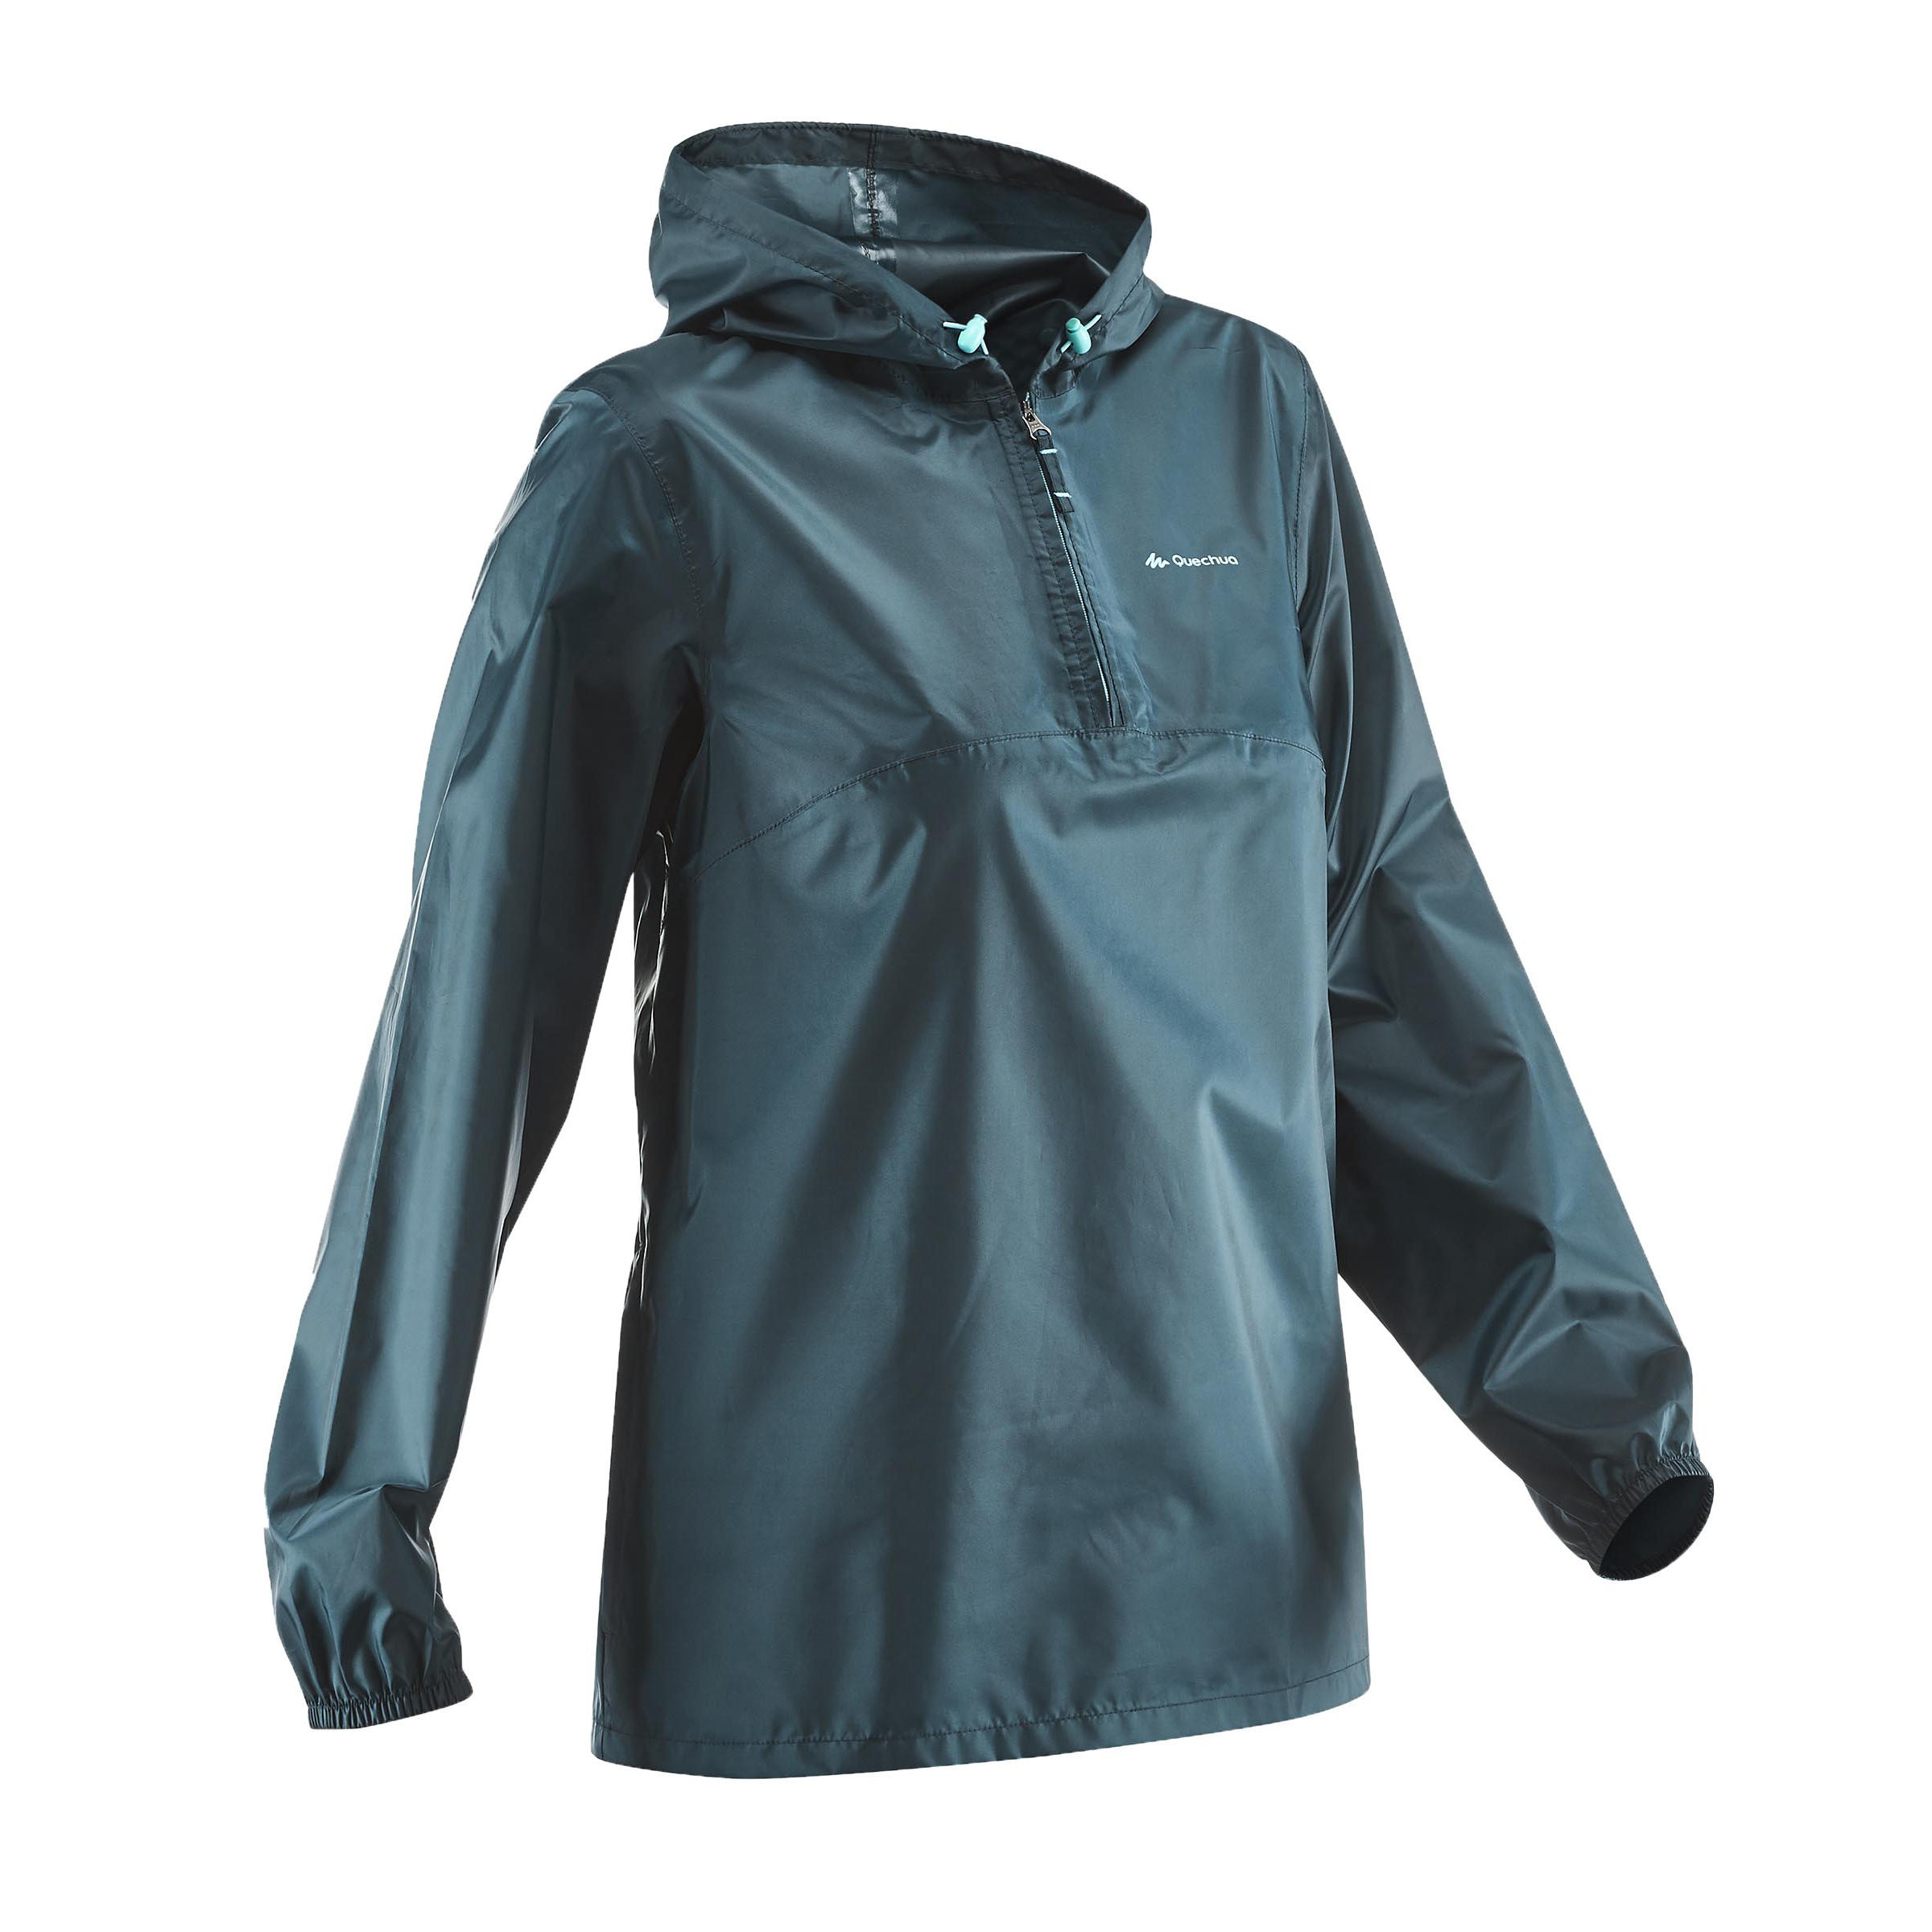 Warm Sleeveless Packable Winter Jacket for Hiking Travel Running Outdoor Ventures Men's Lightweight Puffer Vest Outerwear 